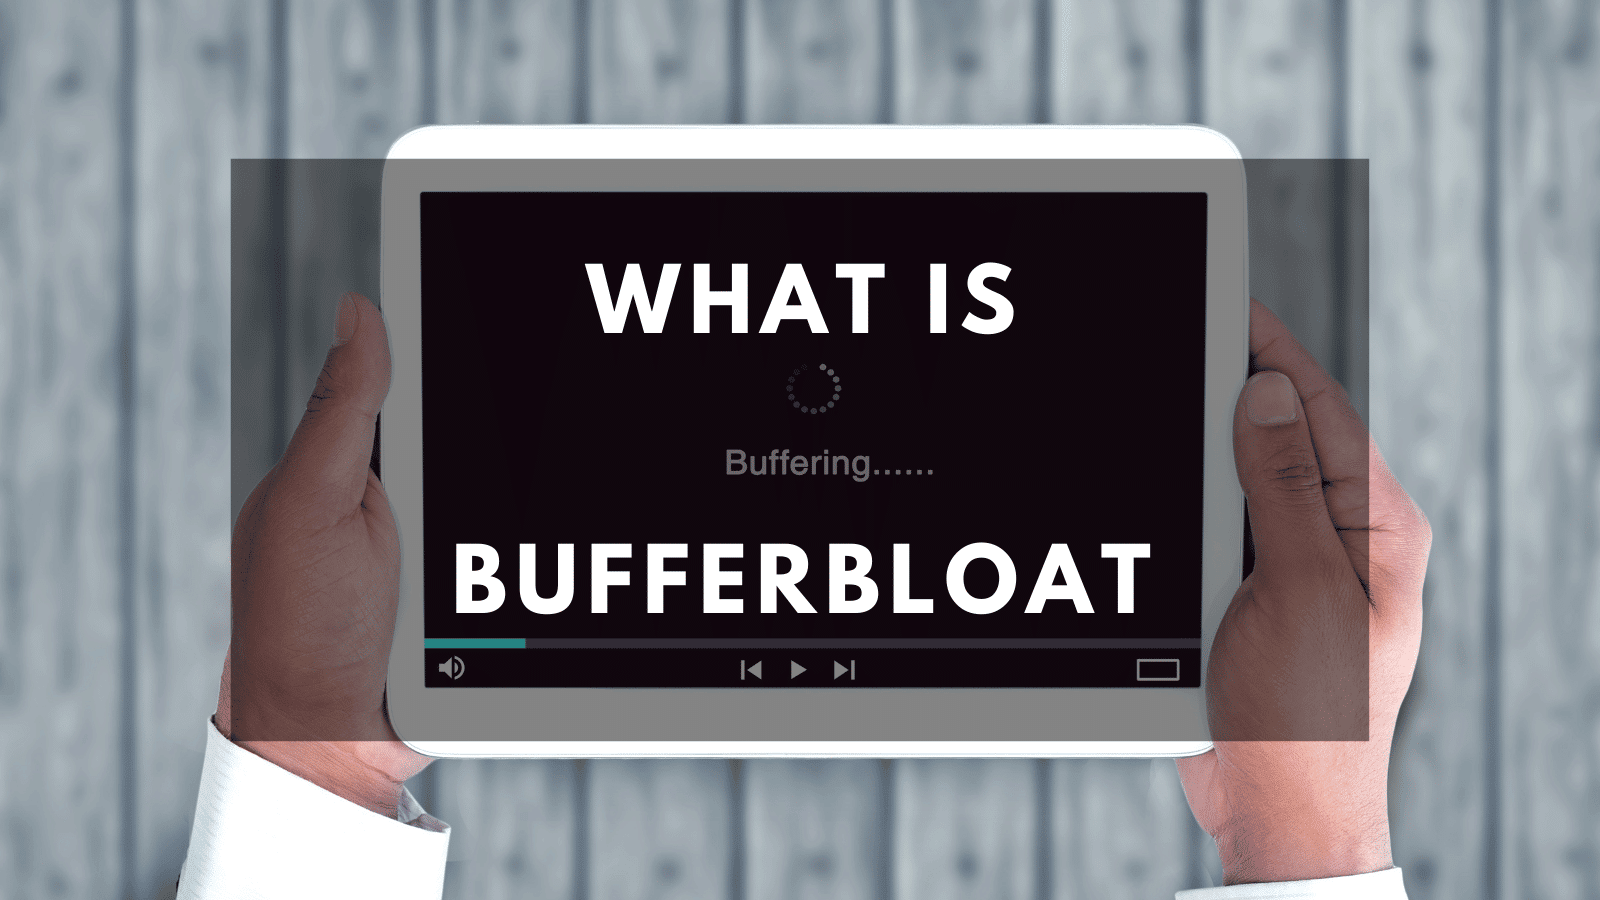 What is bufferbloat?